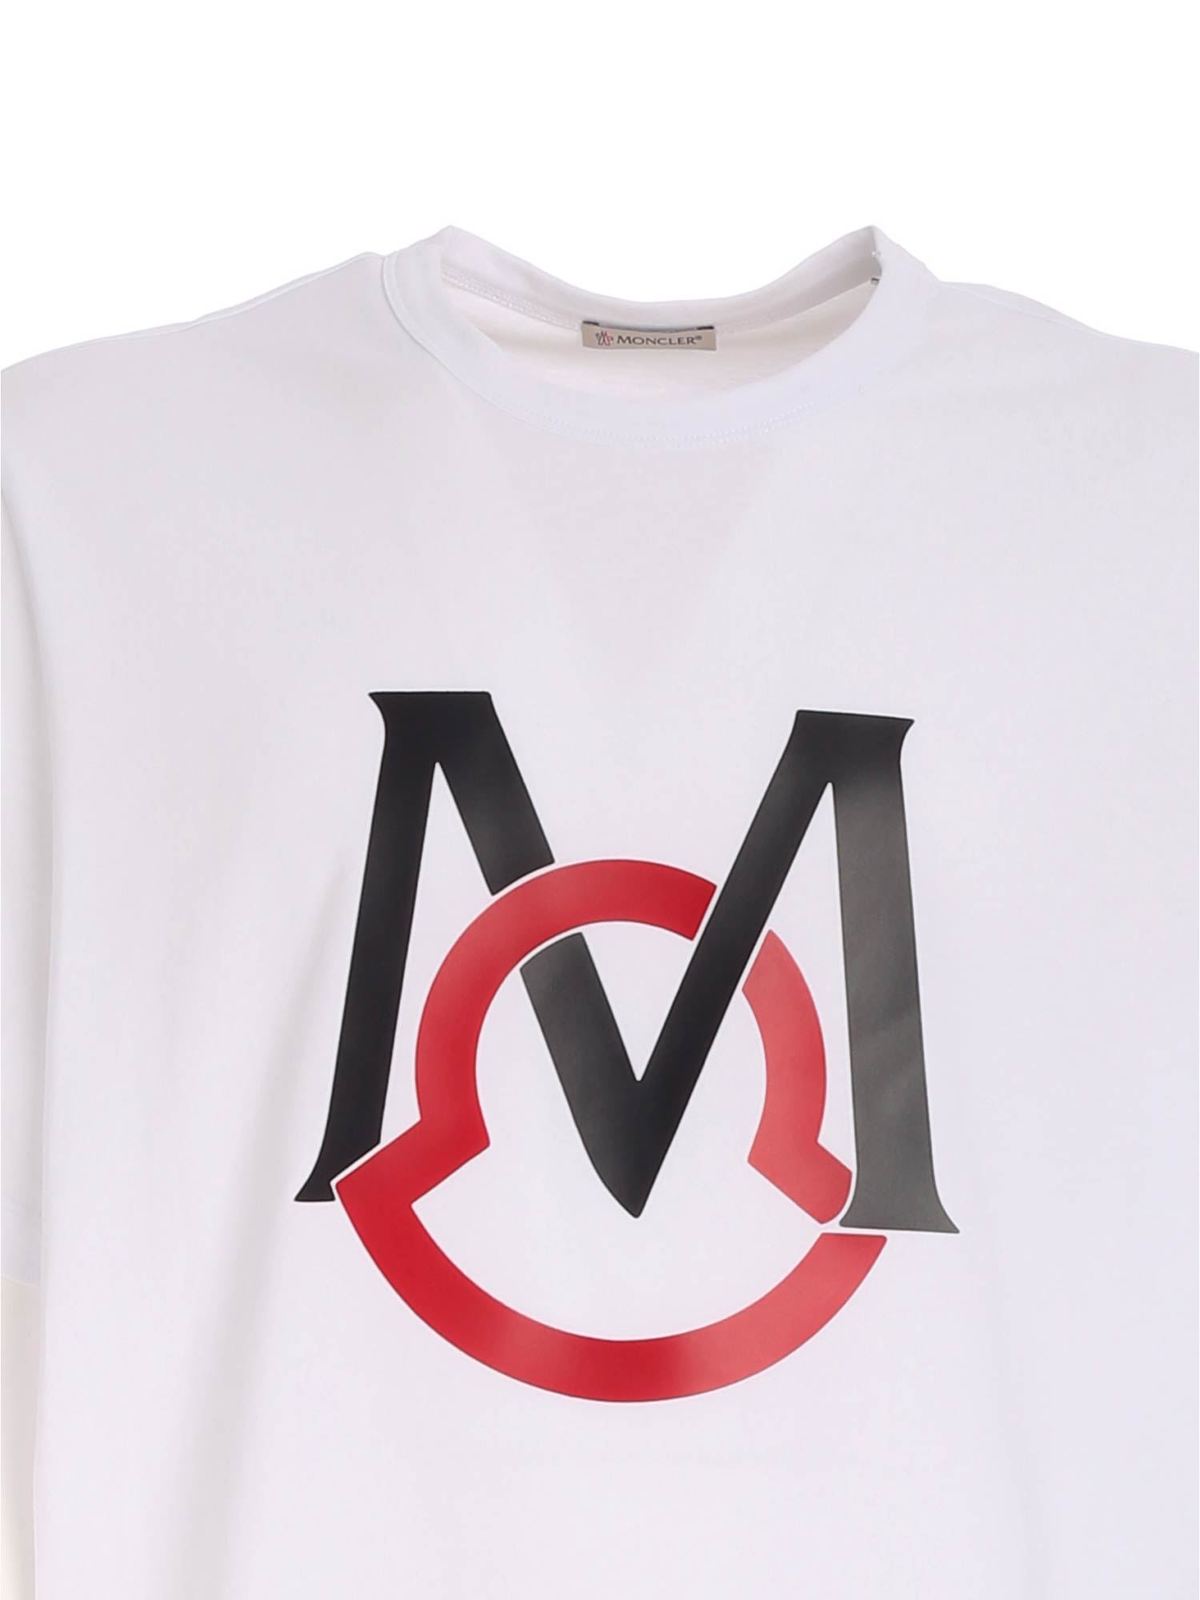 モンクレール Tシャツ m ロゴ - daymarethegame.com